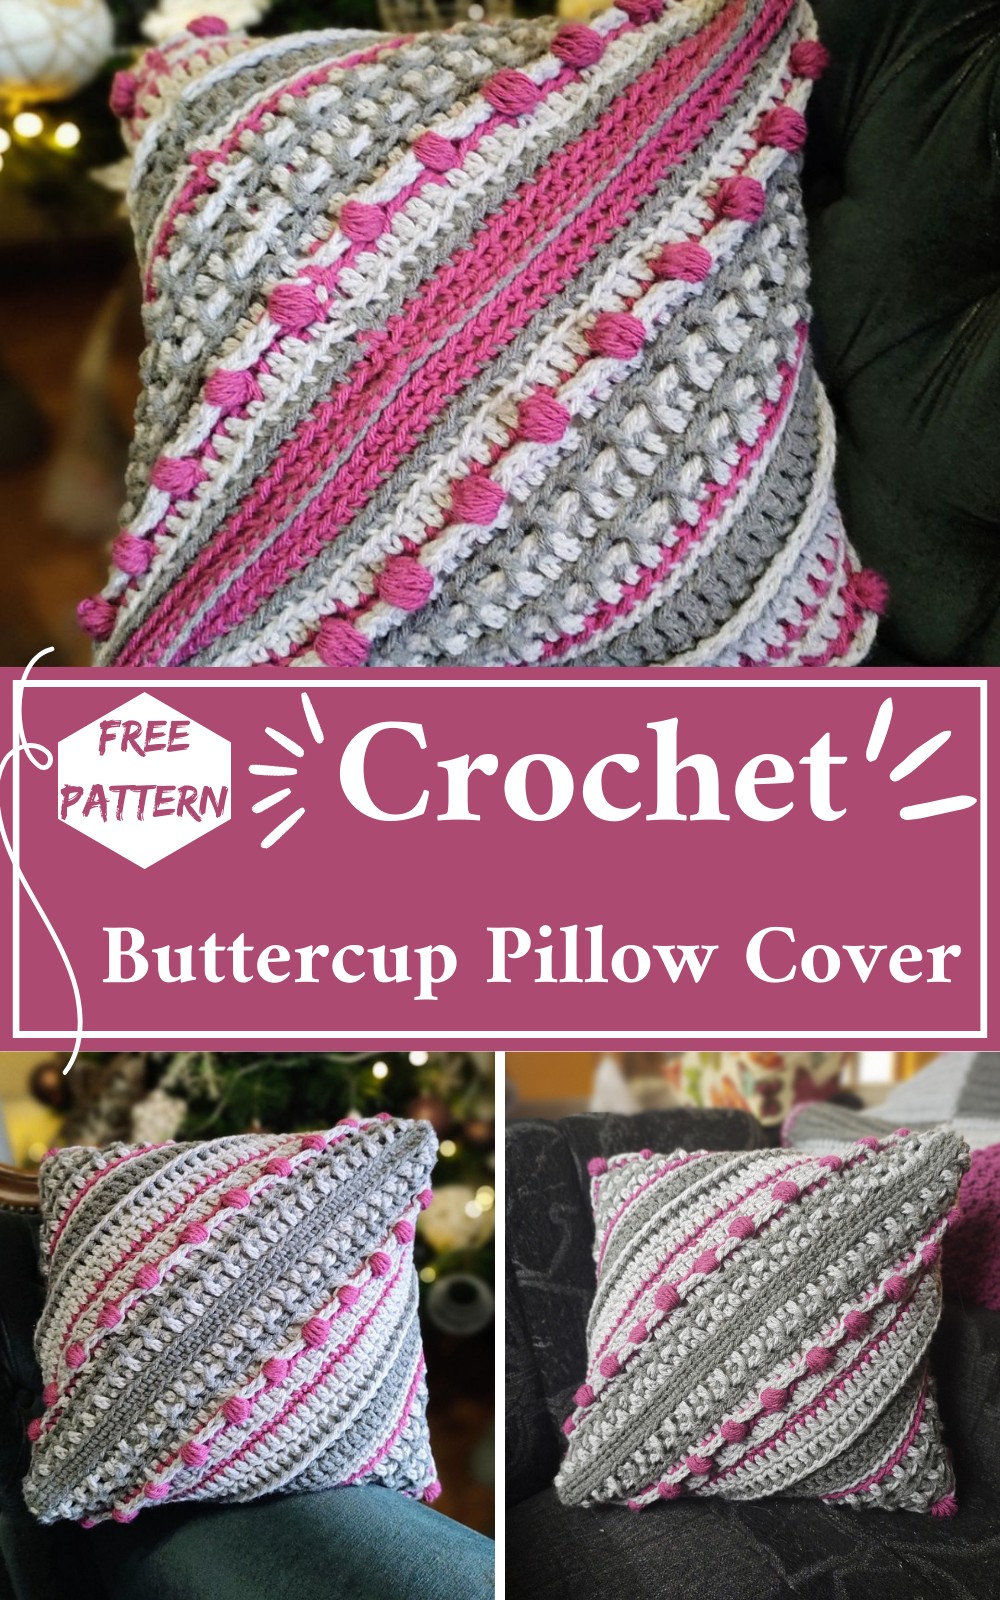 Crochet Persian Buttercup Pillow Cover